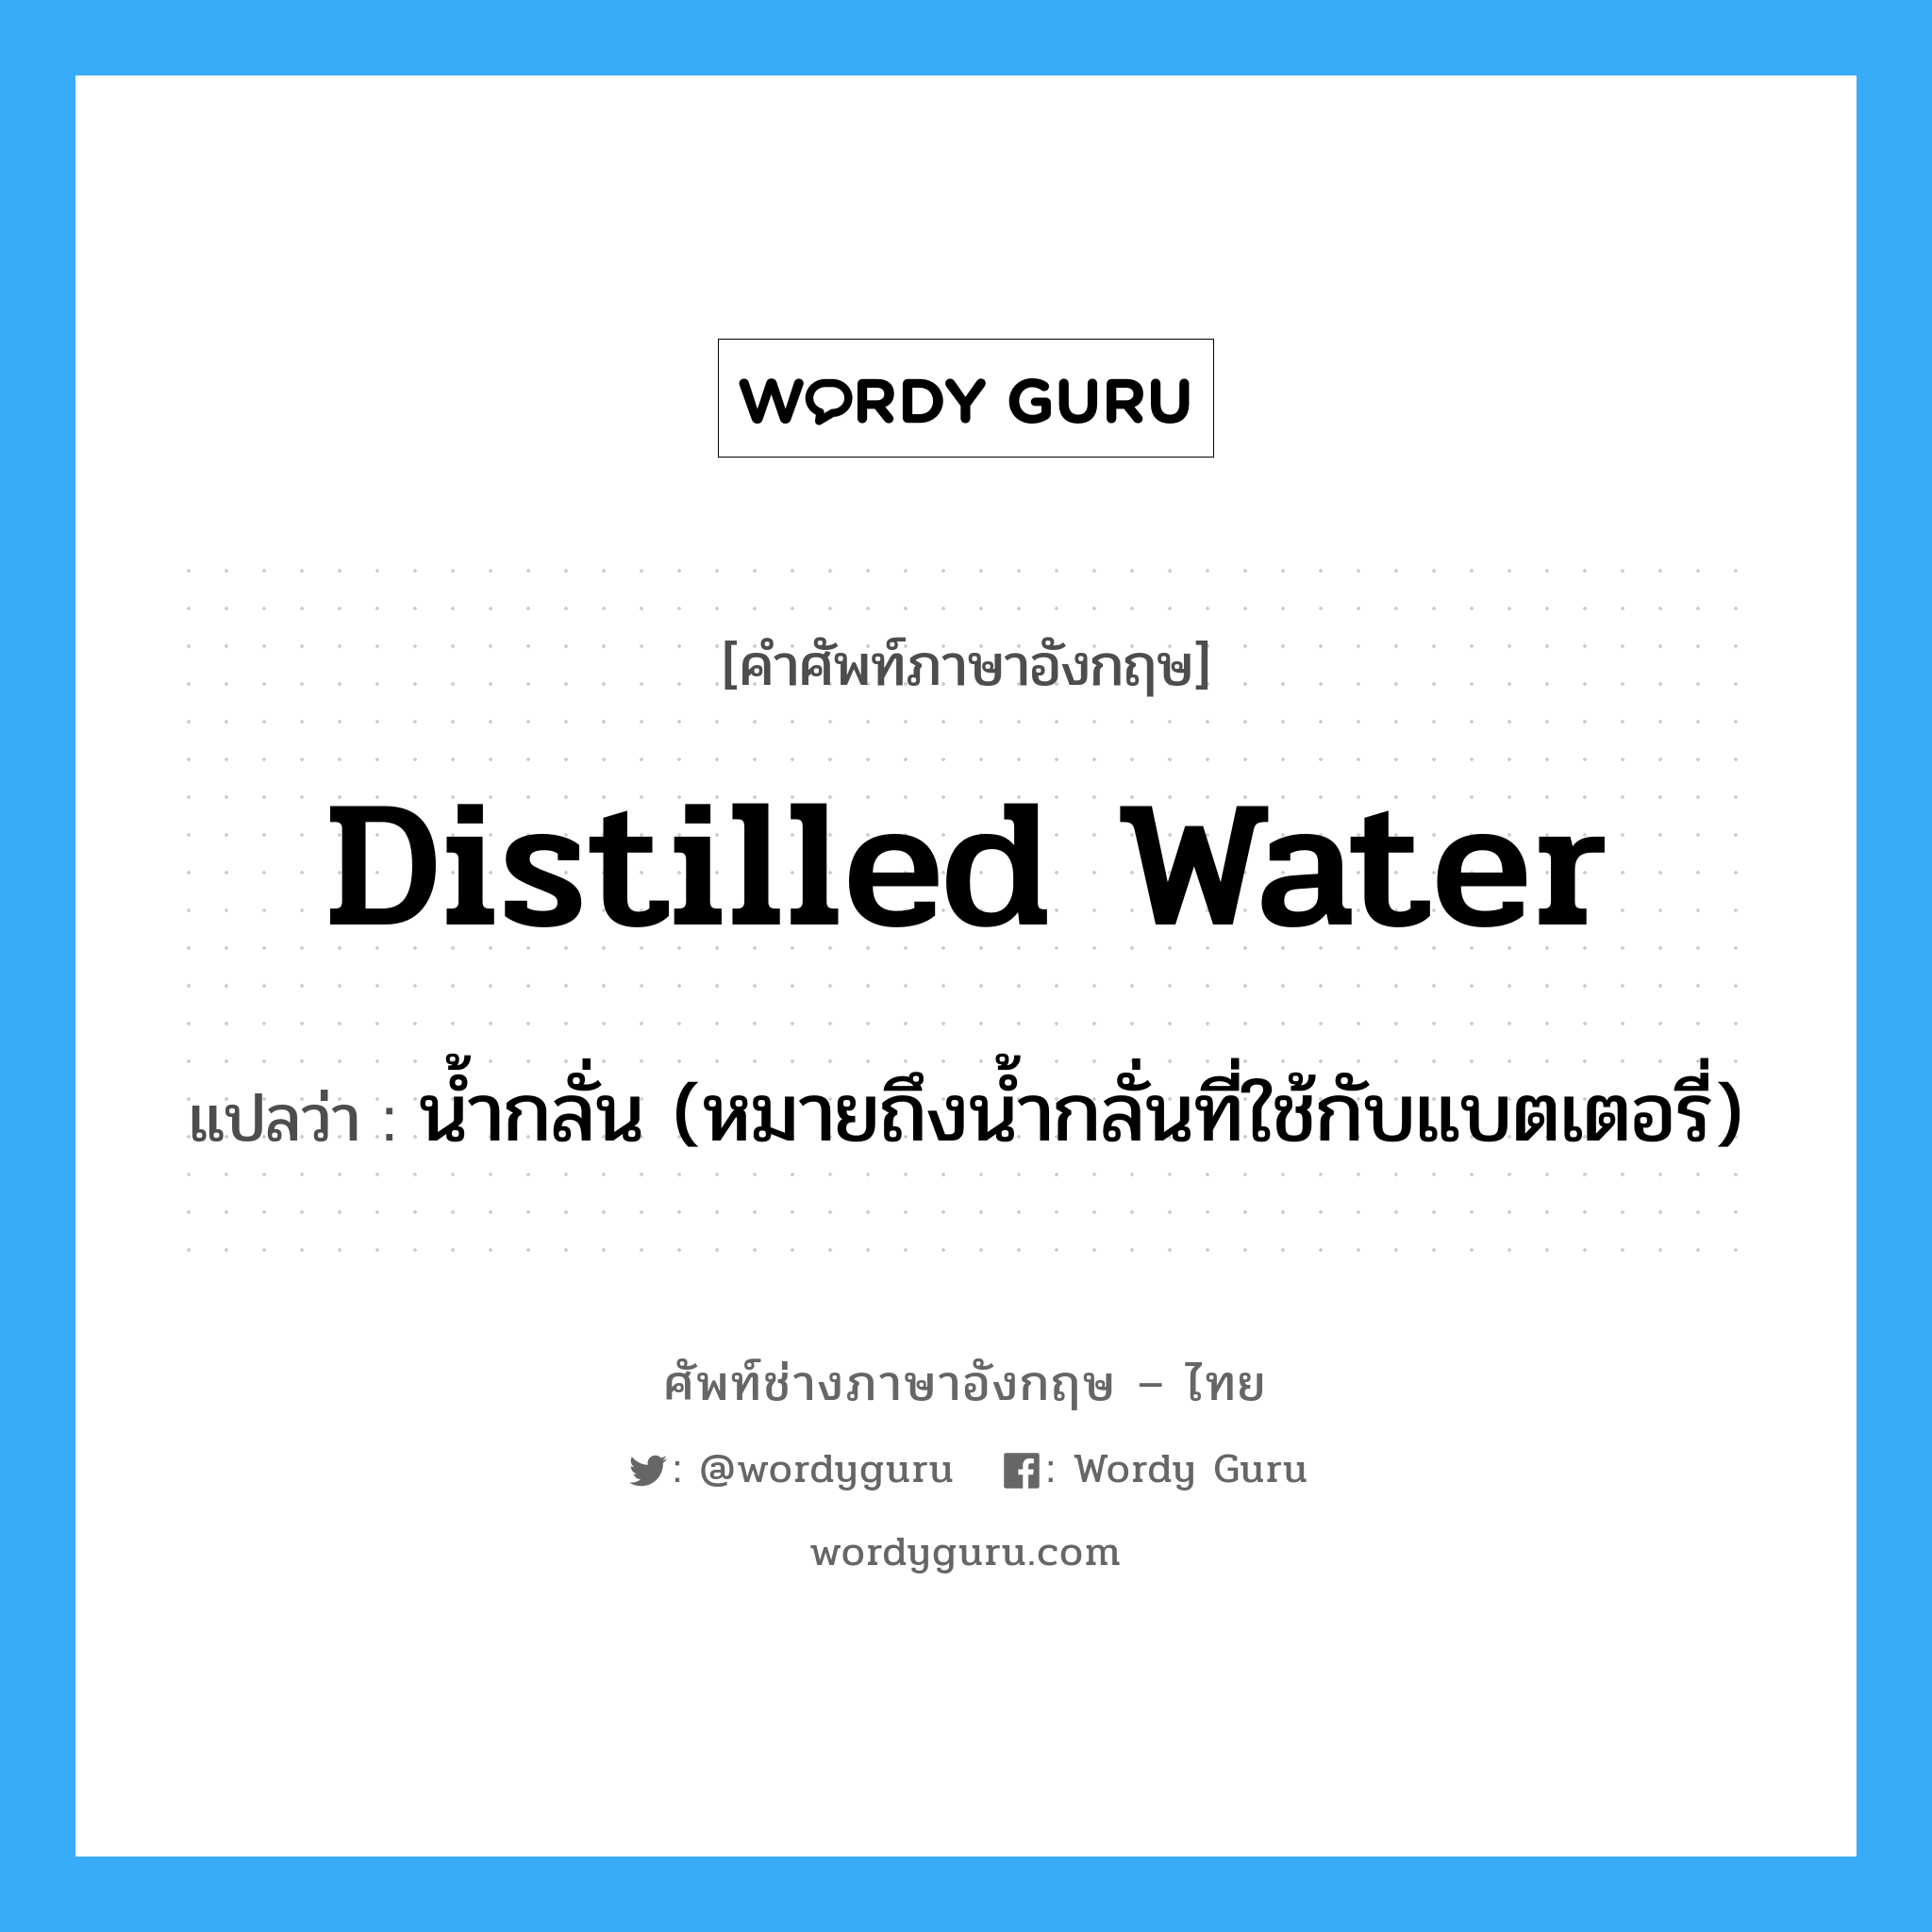 น้ำกลั่น (หมายถึงน้ำกลั่นที่ใช้กับแบตเตอรี่) ภาษาอังกฤษ?, คำศัพท์ช่างภาษาอังกฤษ - ไทย น้ำกลั่น (หมายถึงน้ำกลั่นที่ใช้กับแบตเตอรี่) คำศัพท์ภาษาอังกฤษ น้ำกลั่น (หมายถึงน้ำกลั่นที่ใช้กับแบตเตอรี่) แปลว่า distilled water